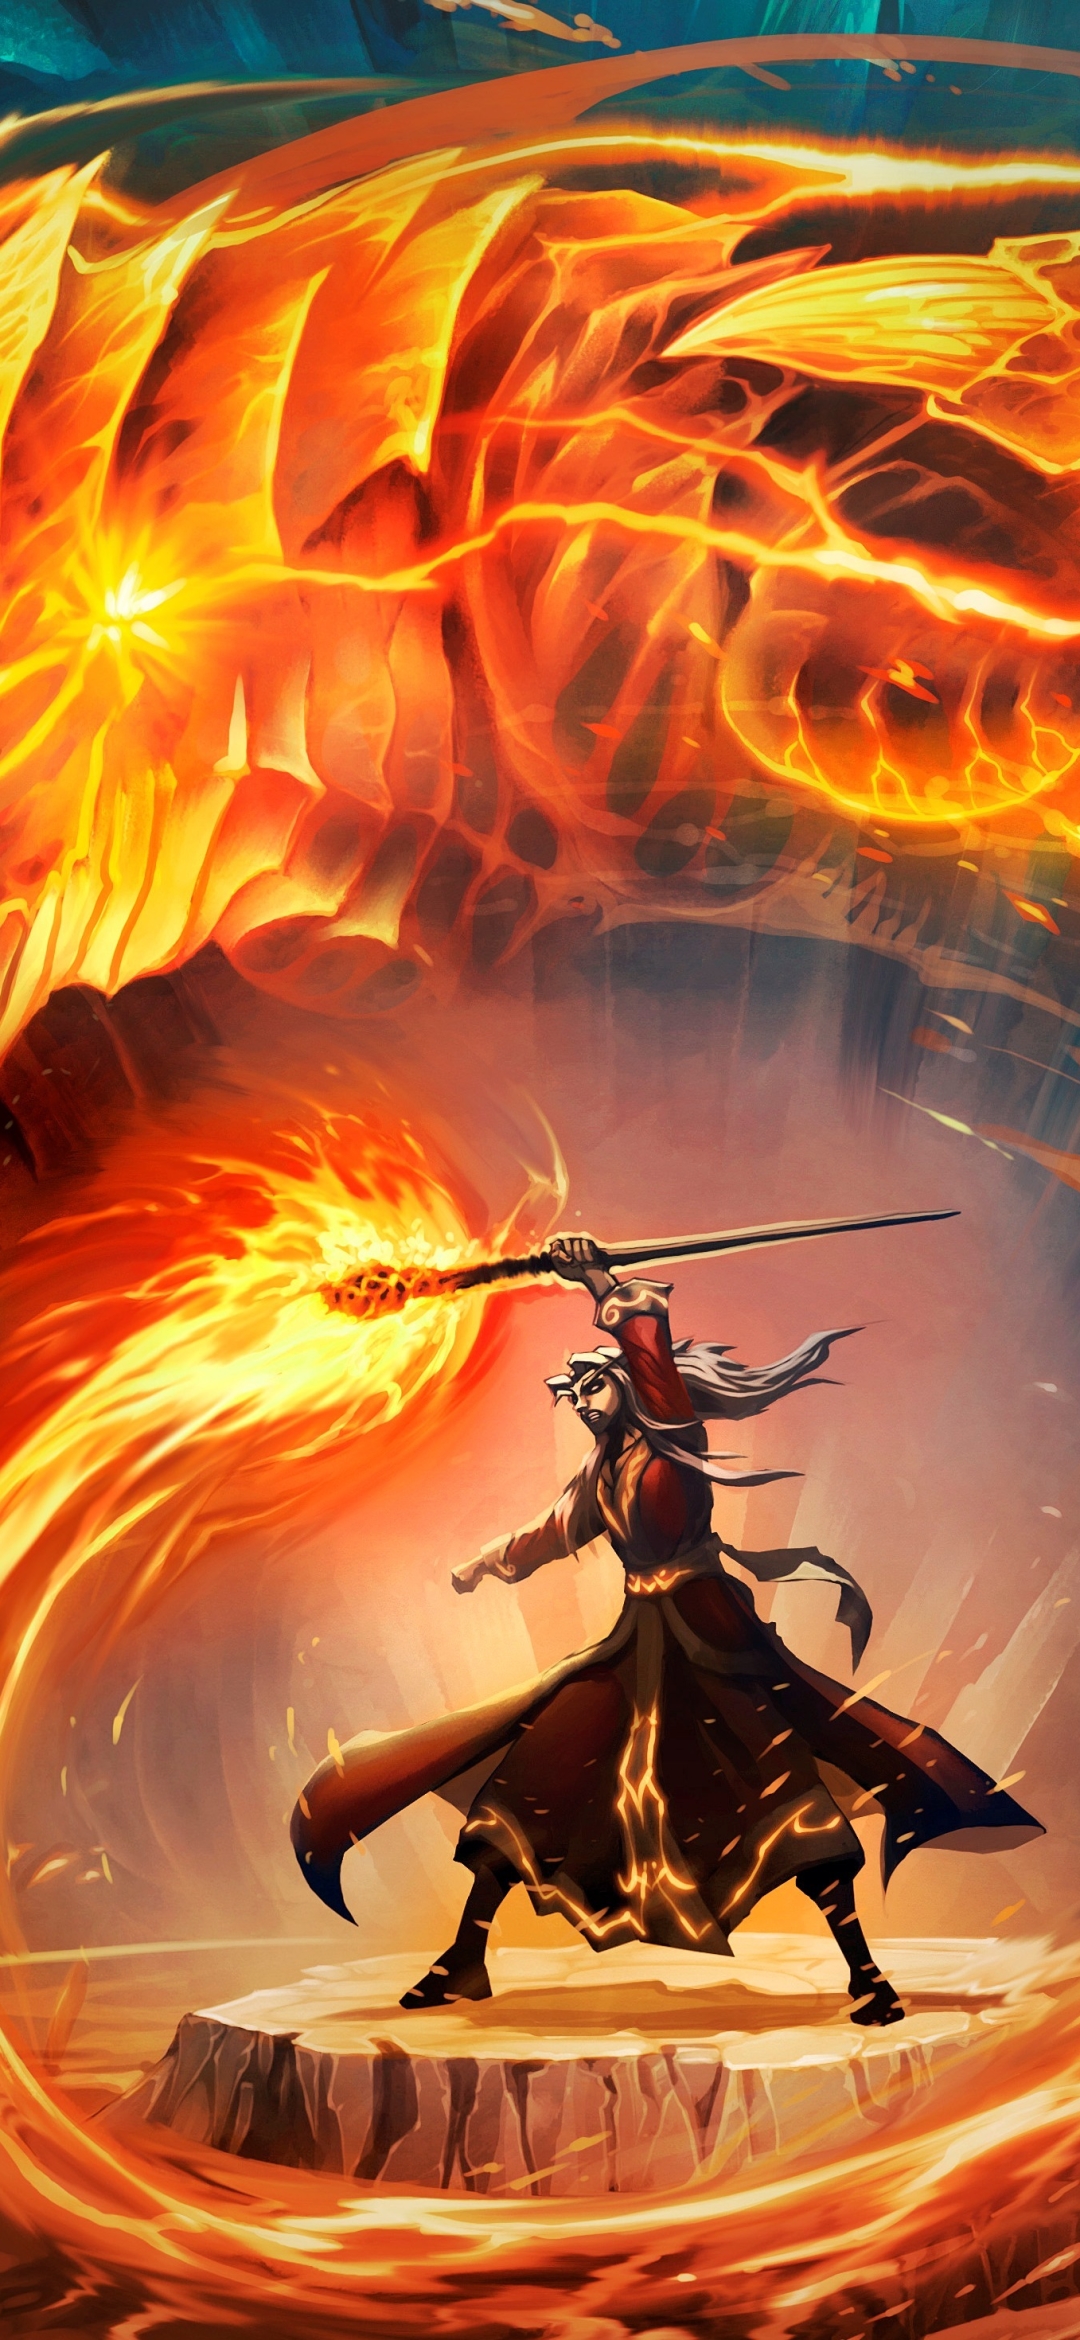 Descarga gratuita de fondo de pantalla para móvil de Fuego, Warcraft, Dragón, Mago, Continuar, Personal, Brujo, Videojuego, Hearthstone: Heroes Of Warcraft.